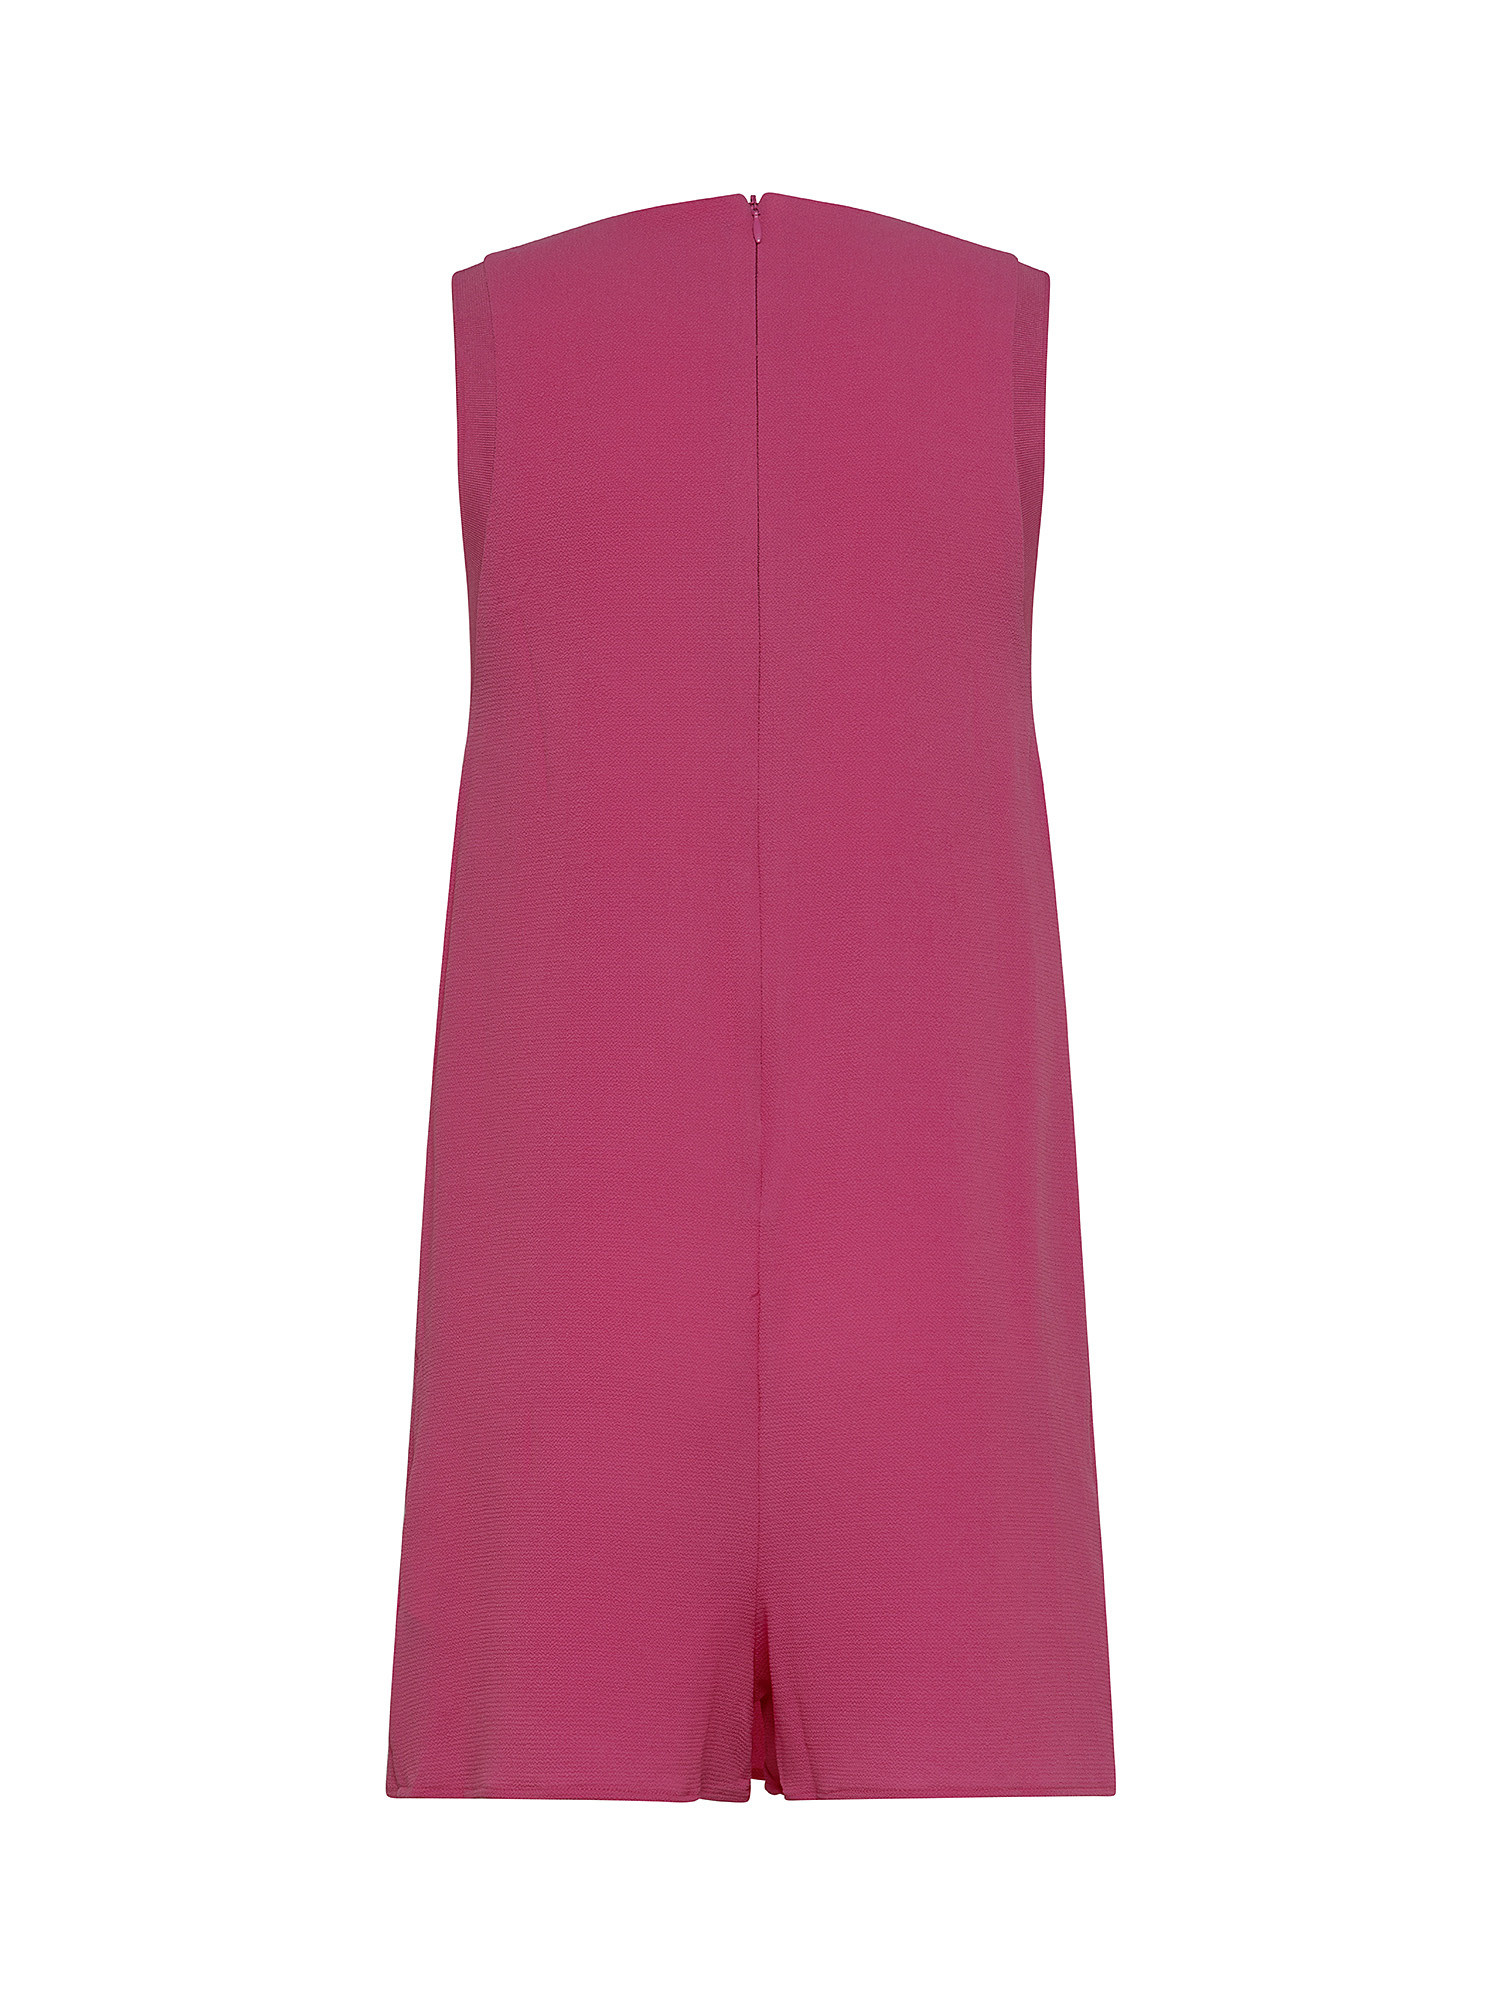 Ester short dress, Pink Flamingo, large image number 1